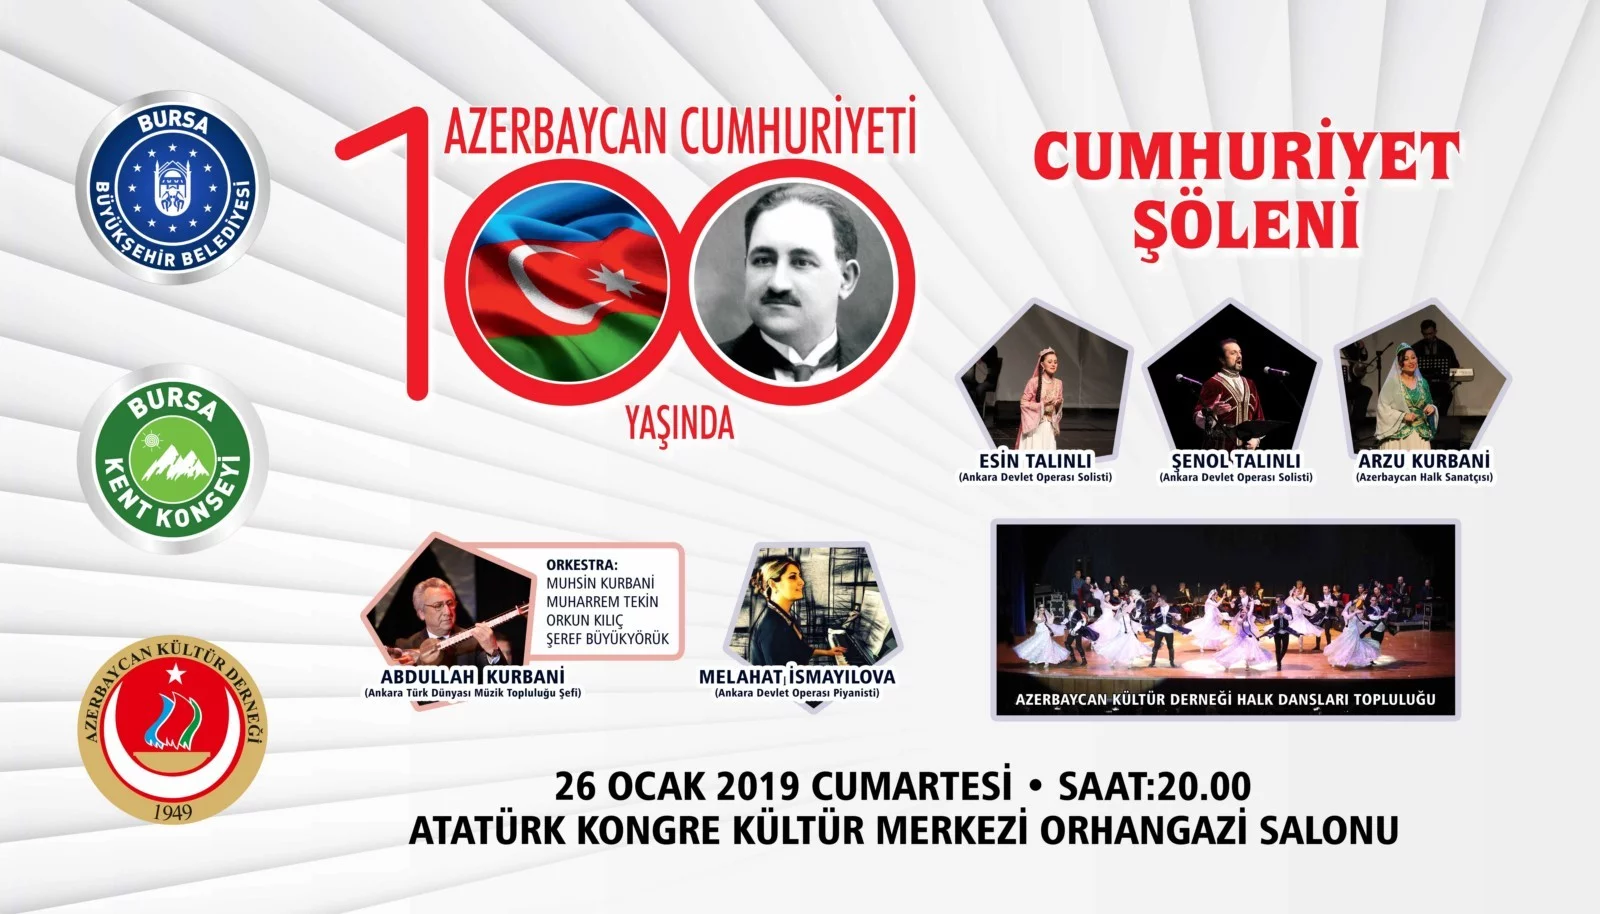 Azerbaycan Cumhuriyeti 100 yaşında